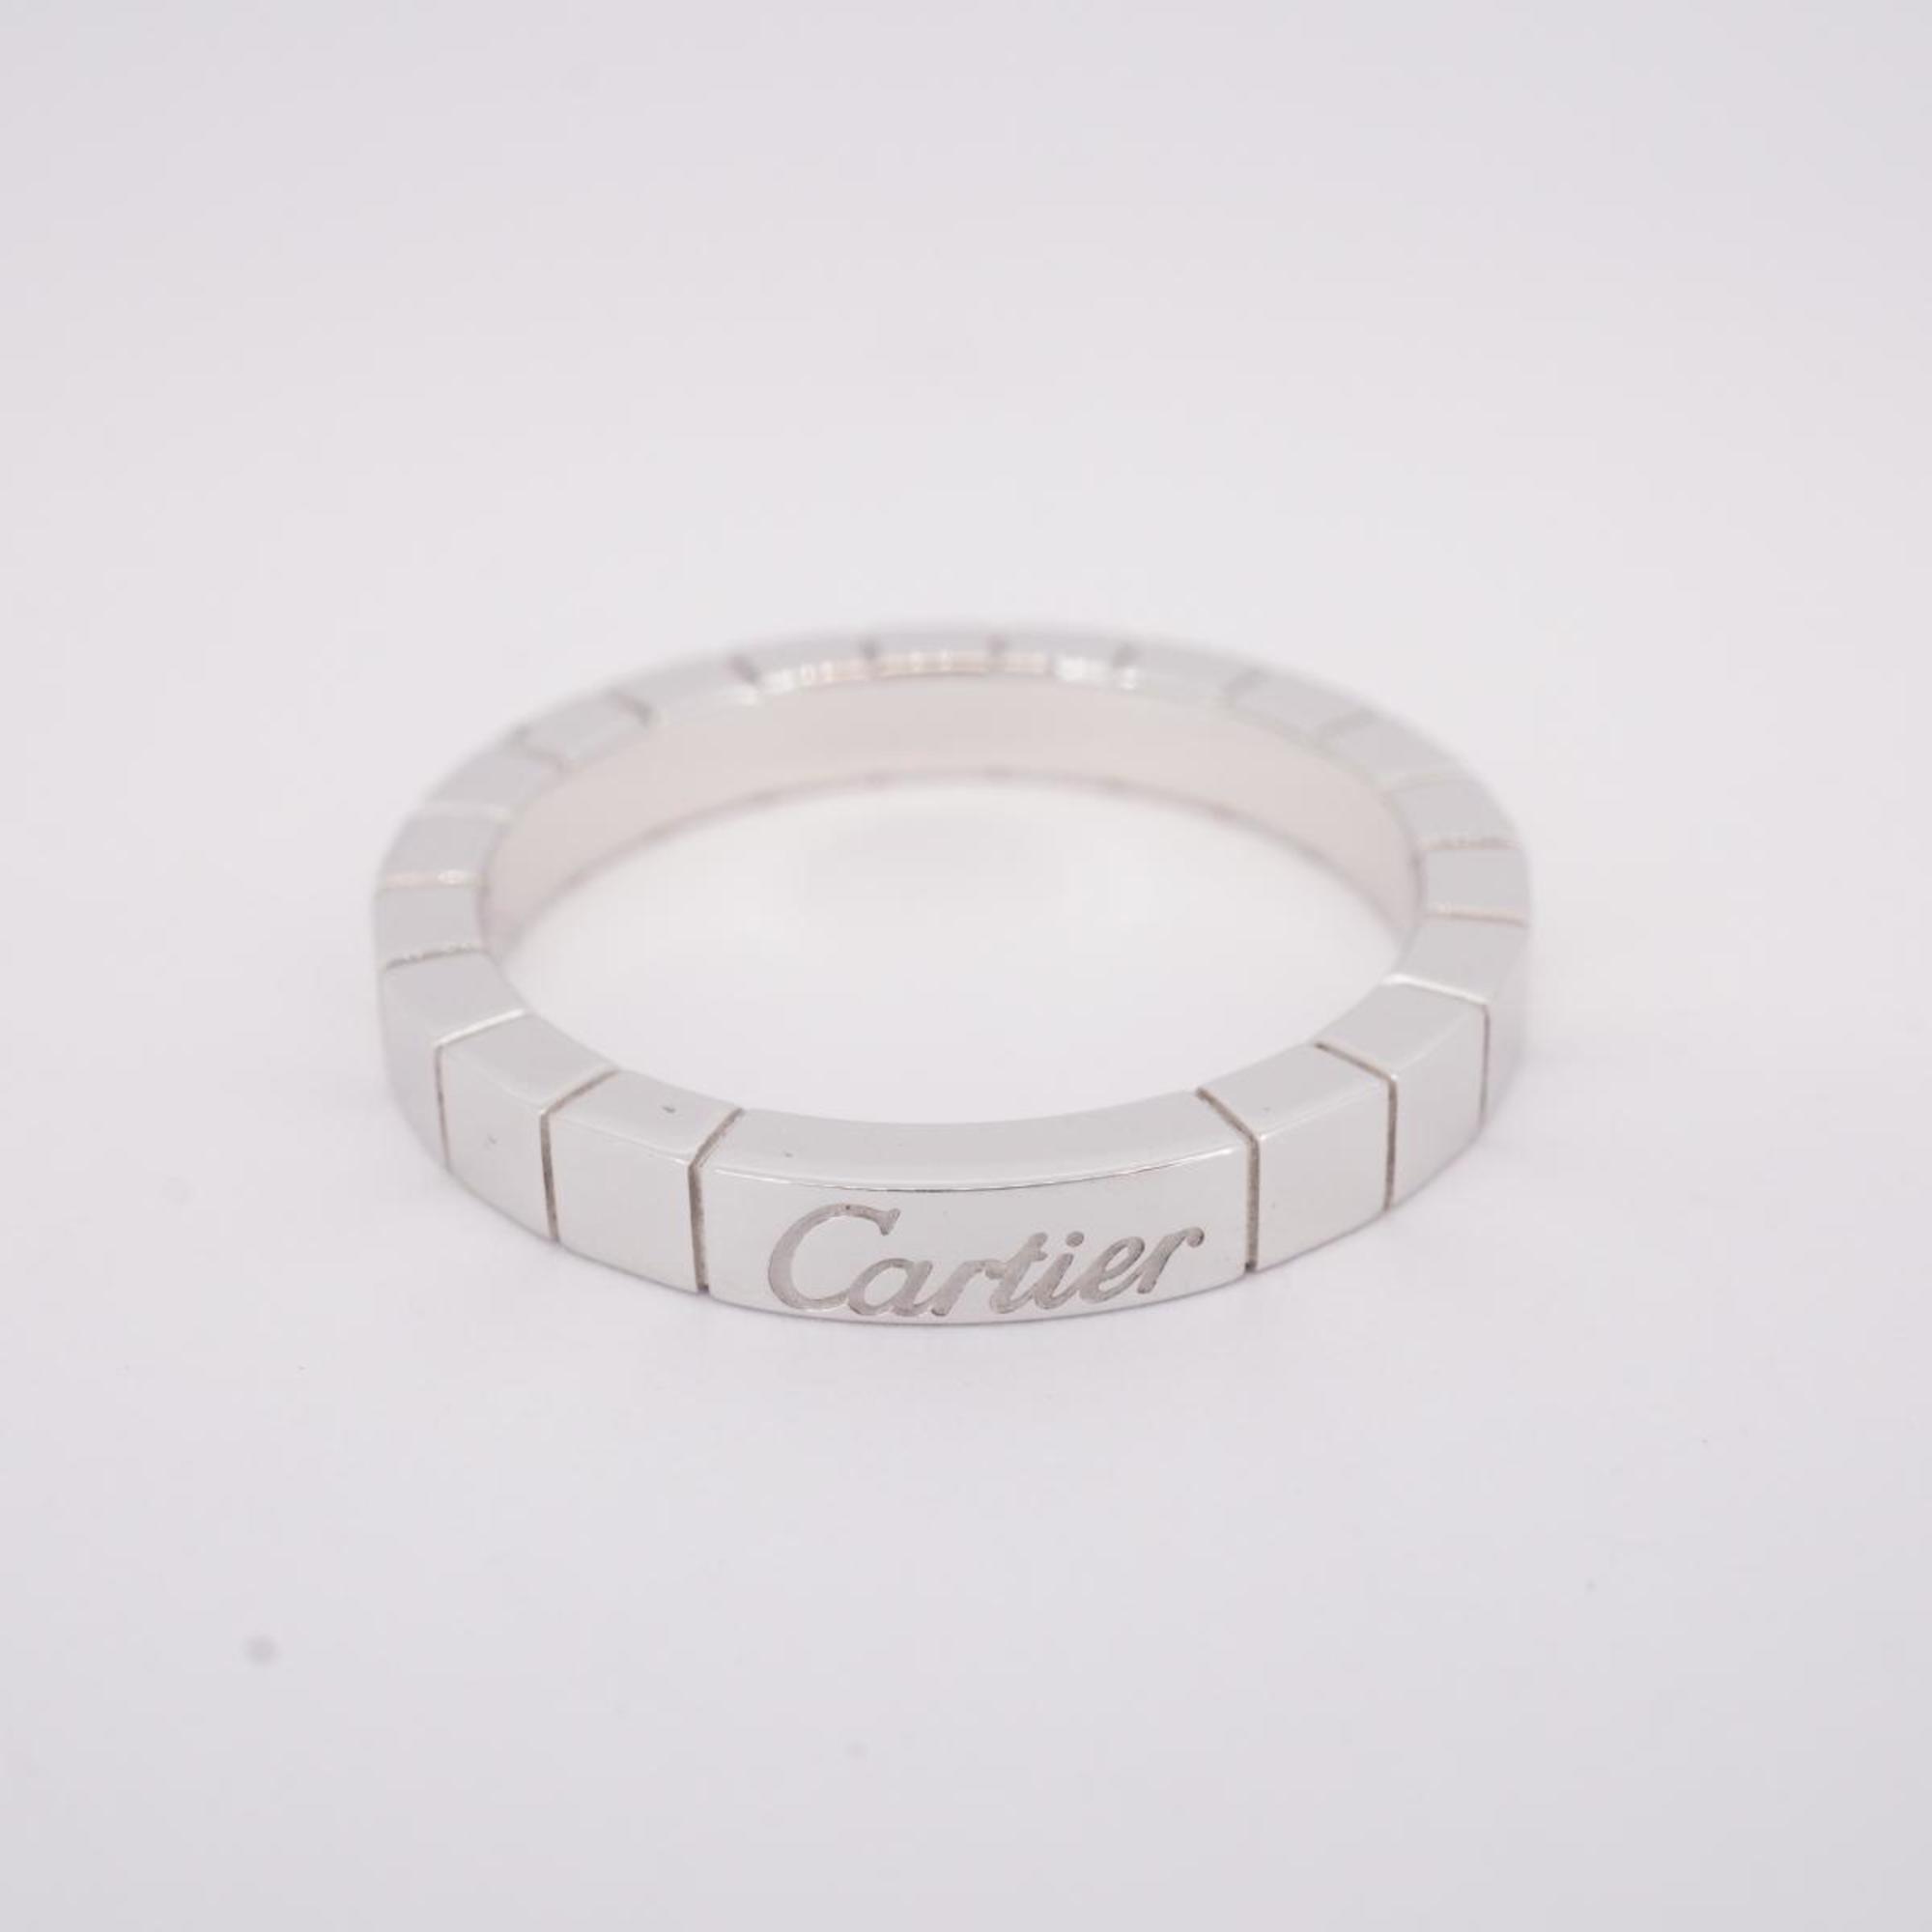 カルティエ(Cartier) カルティエ リング ラニエール K18WG ホワイトゴールド  レディース